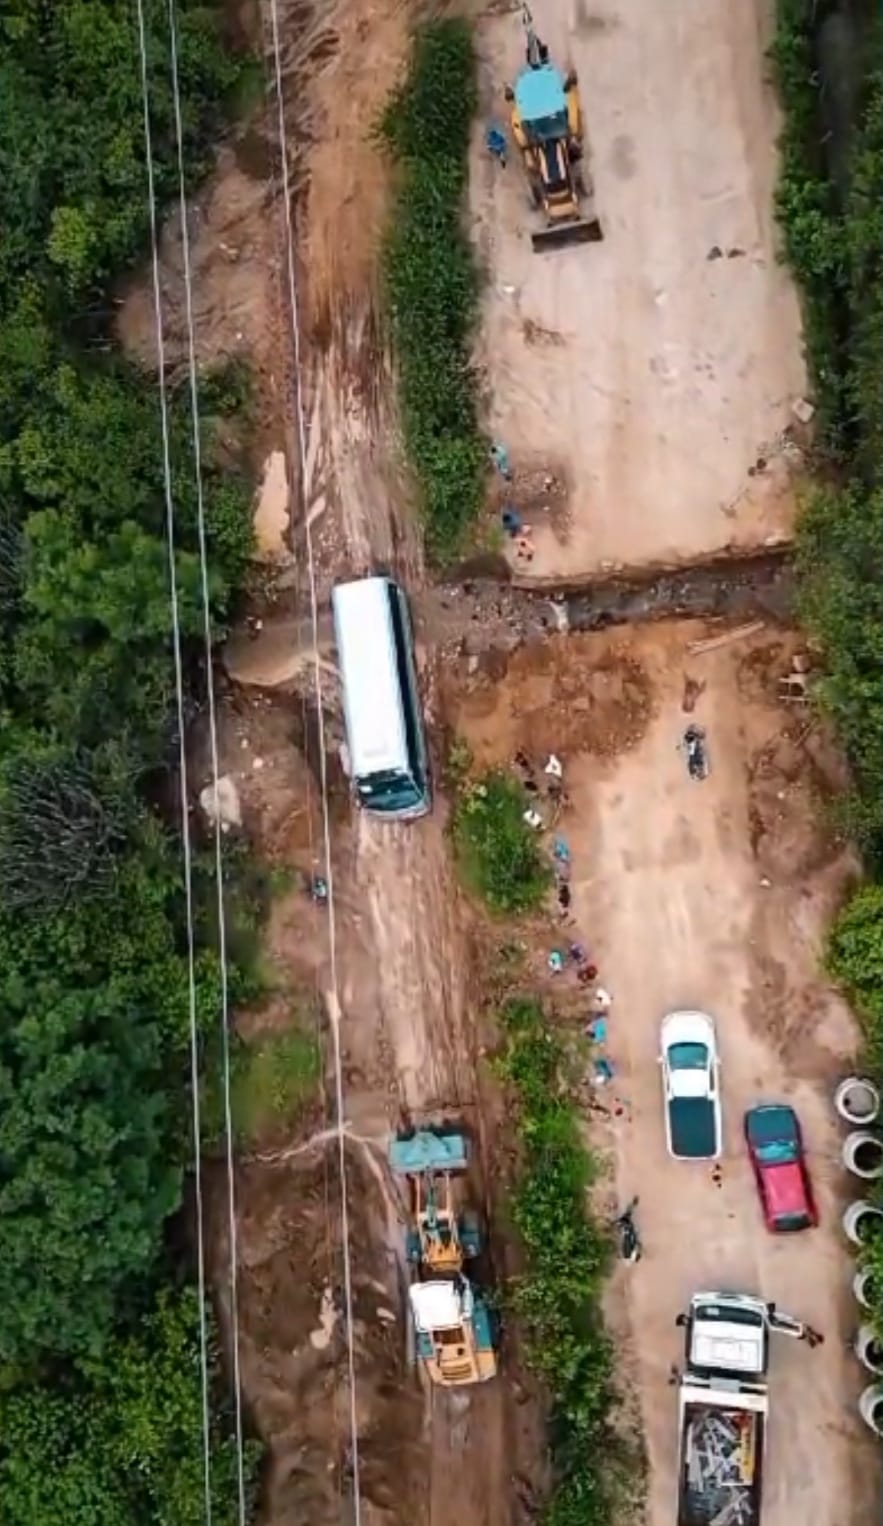 Prefeitura de Cerro Corá continua serviços visando desobstrução do trecho da BR 104 no município (Vídeo)